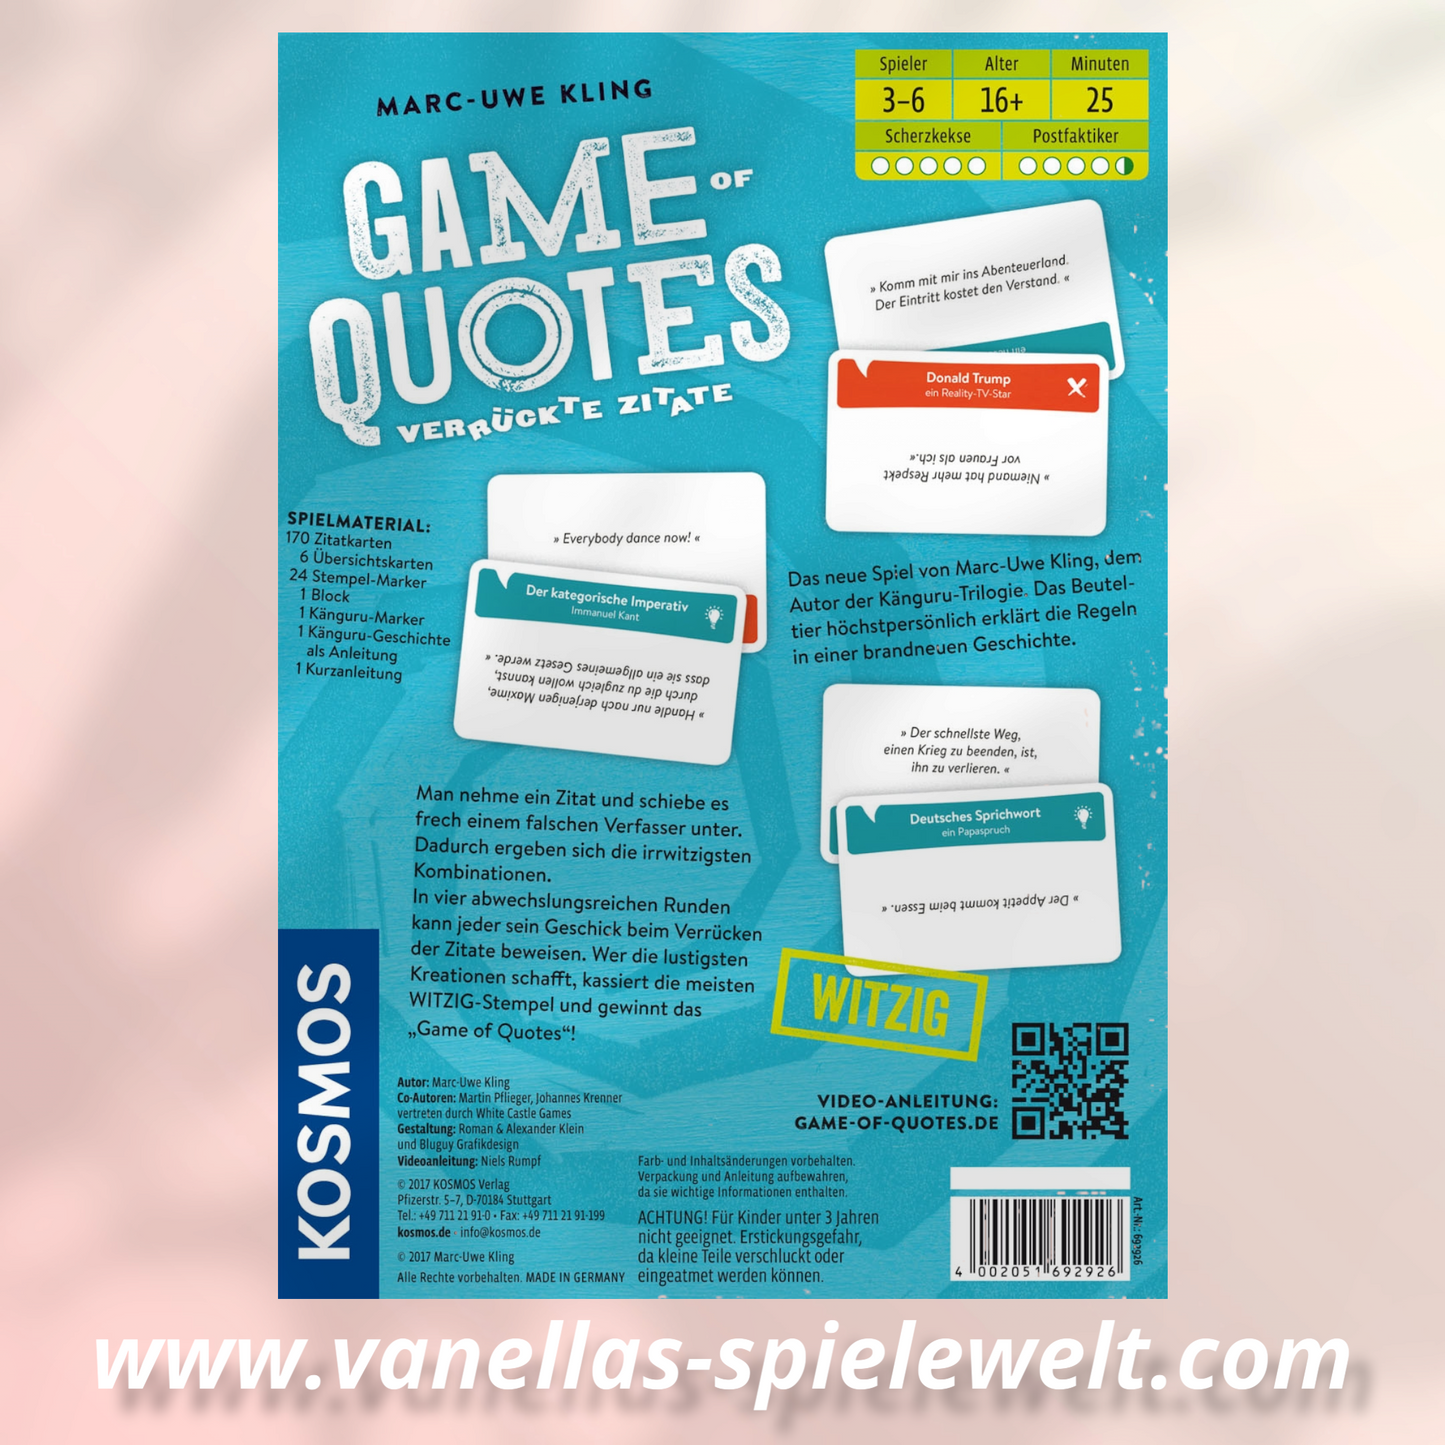 Game of Quotes
Verrückte Zitate - Kosmos Vanellas Spielewelt